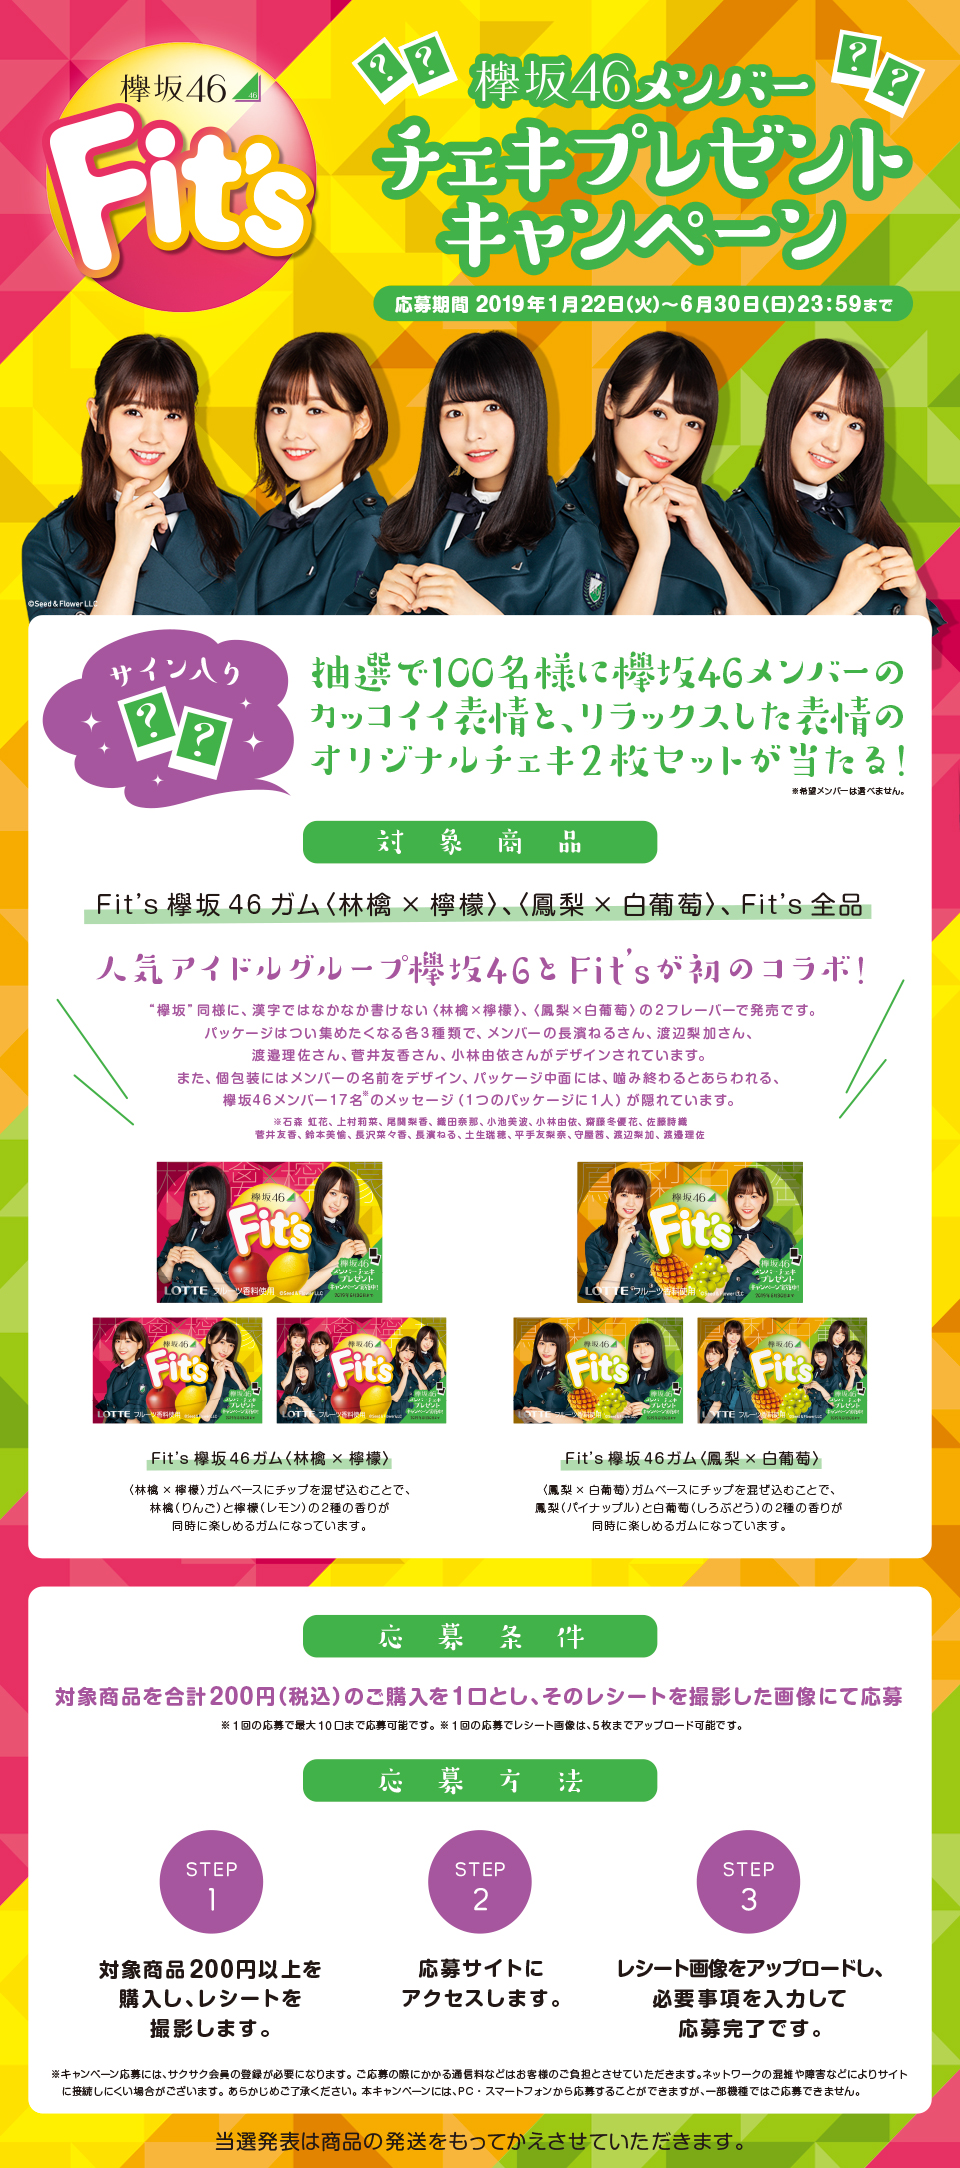 欅坂46 チェキプレゼントキャンペーン Lotte Group公式オンラインモール